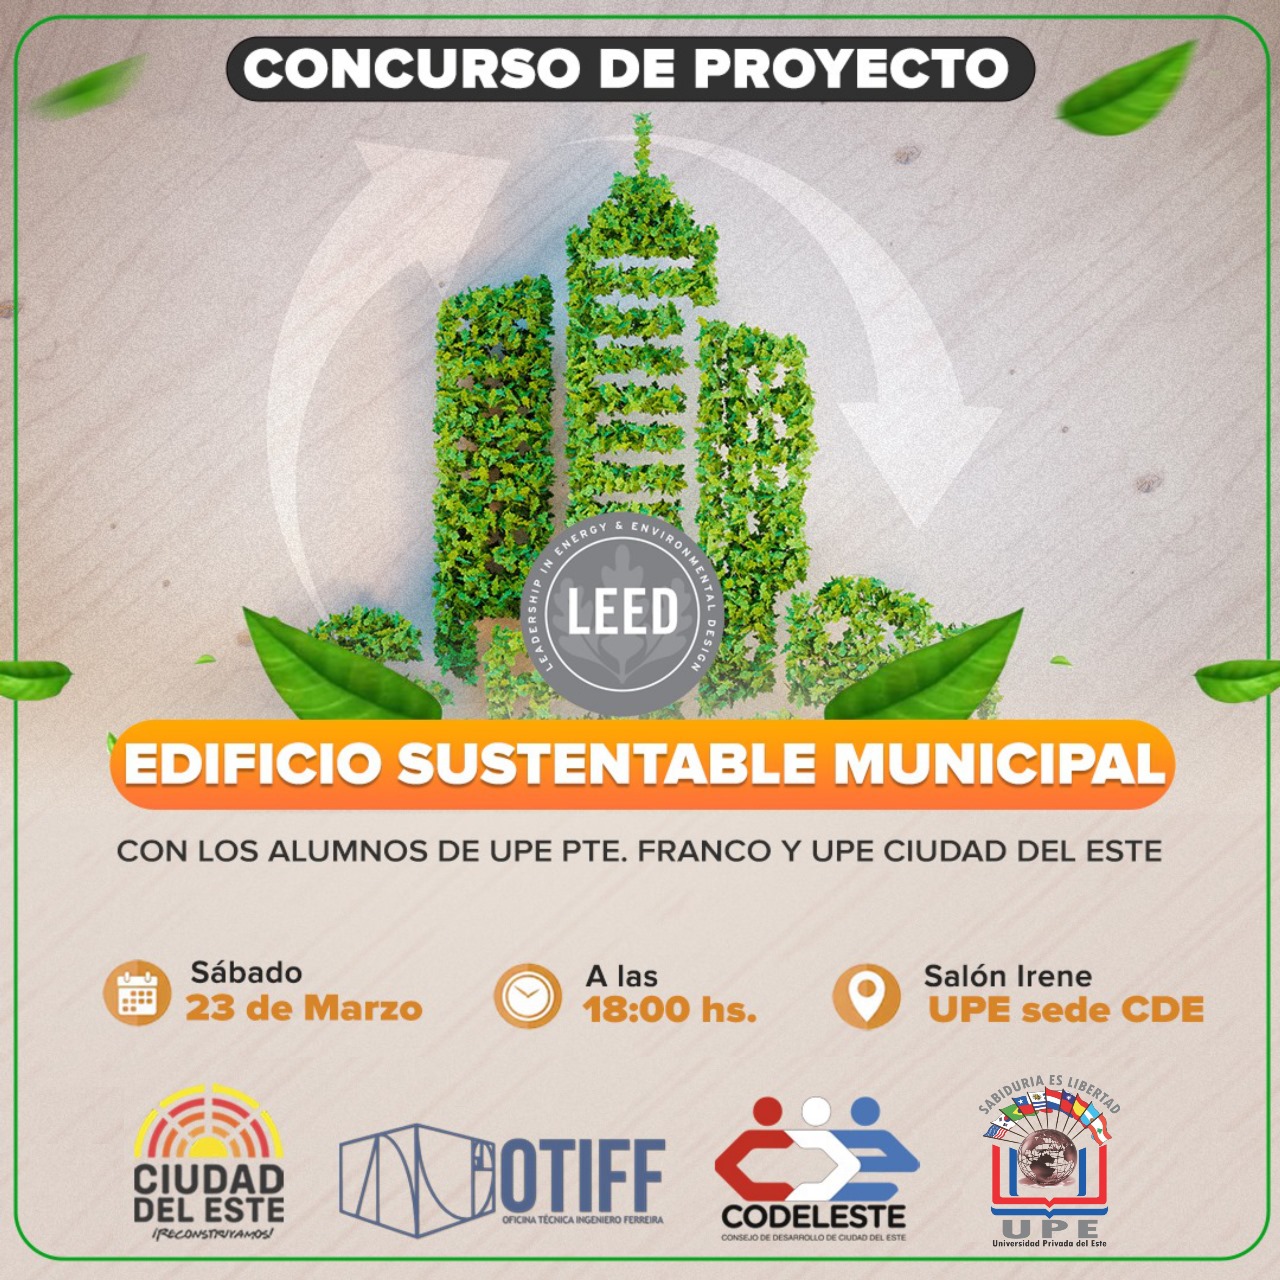 Edificio Sustentable Municipal: Un ejemplo de compromiso ambiental 